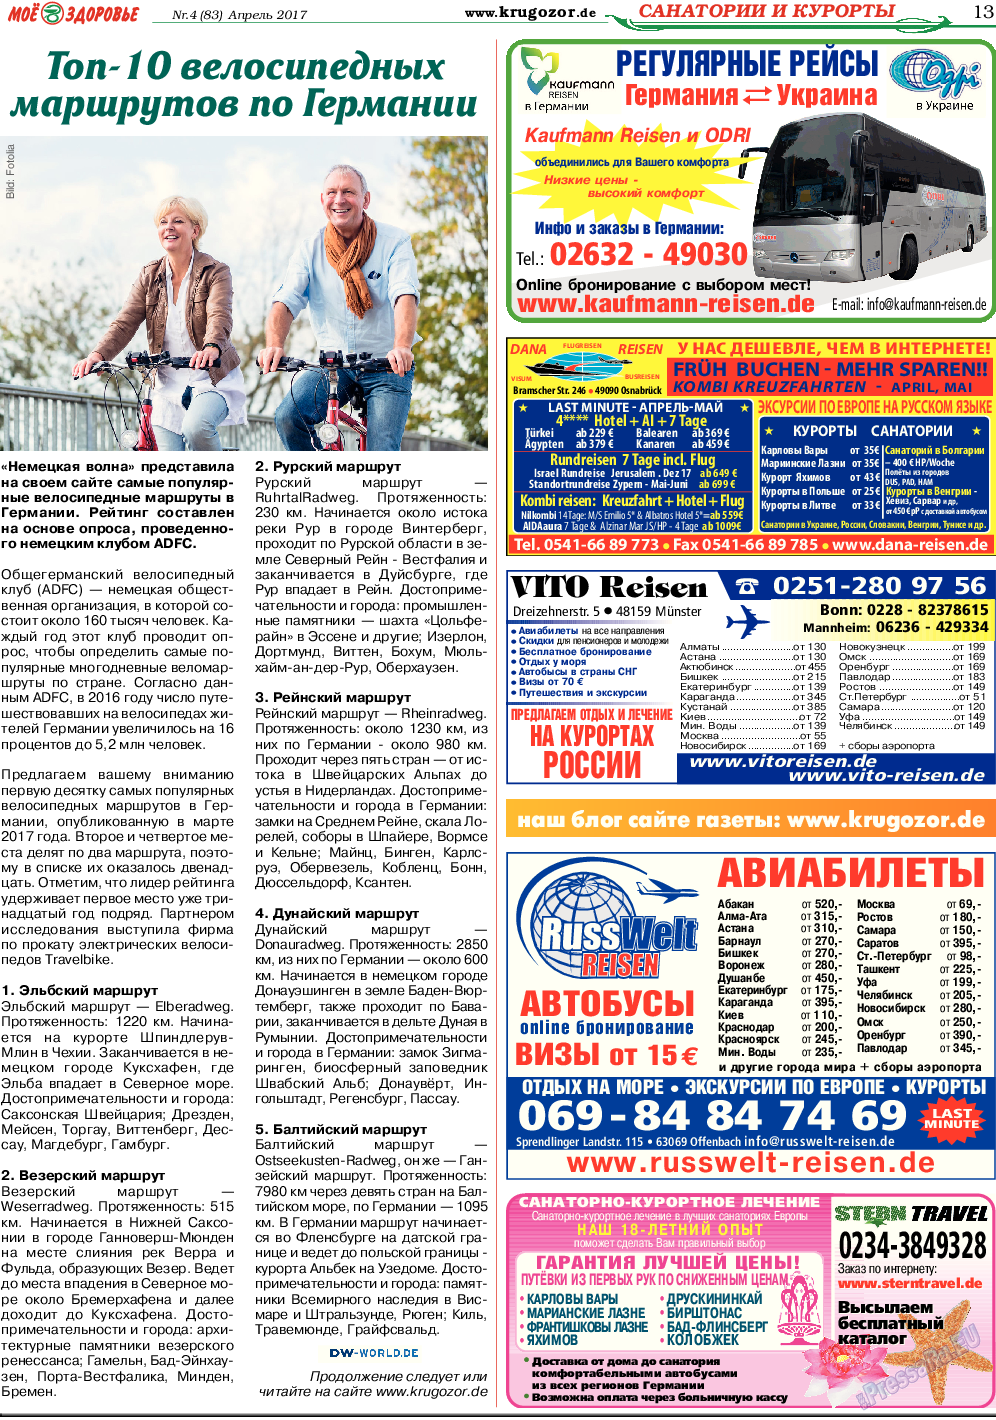 Кругозор, газета. 2017 №4 стр.13